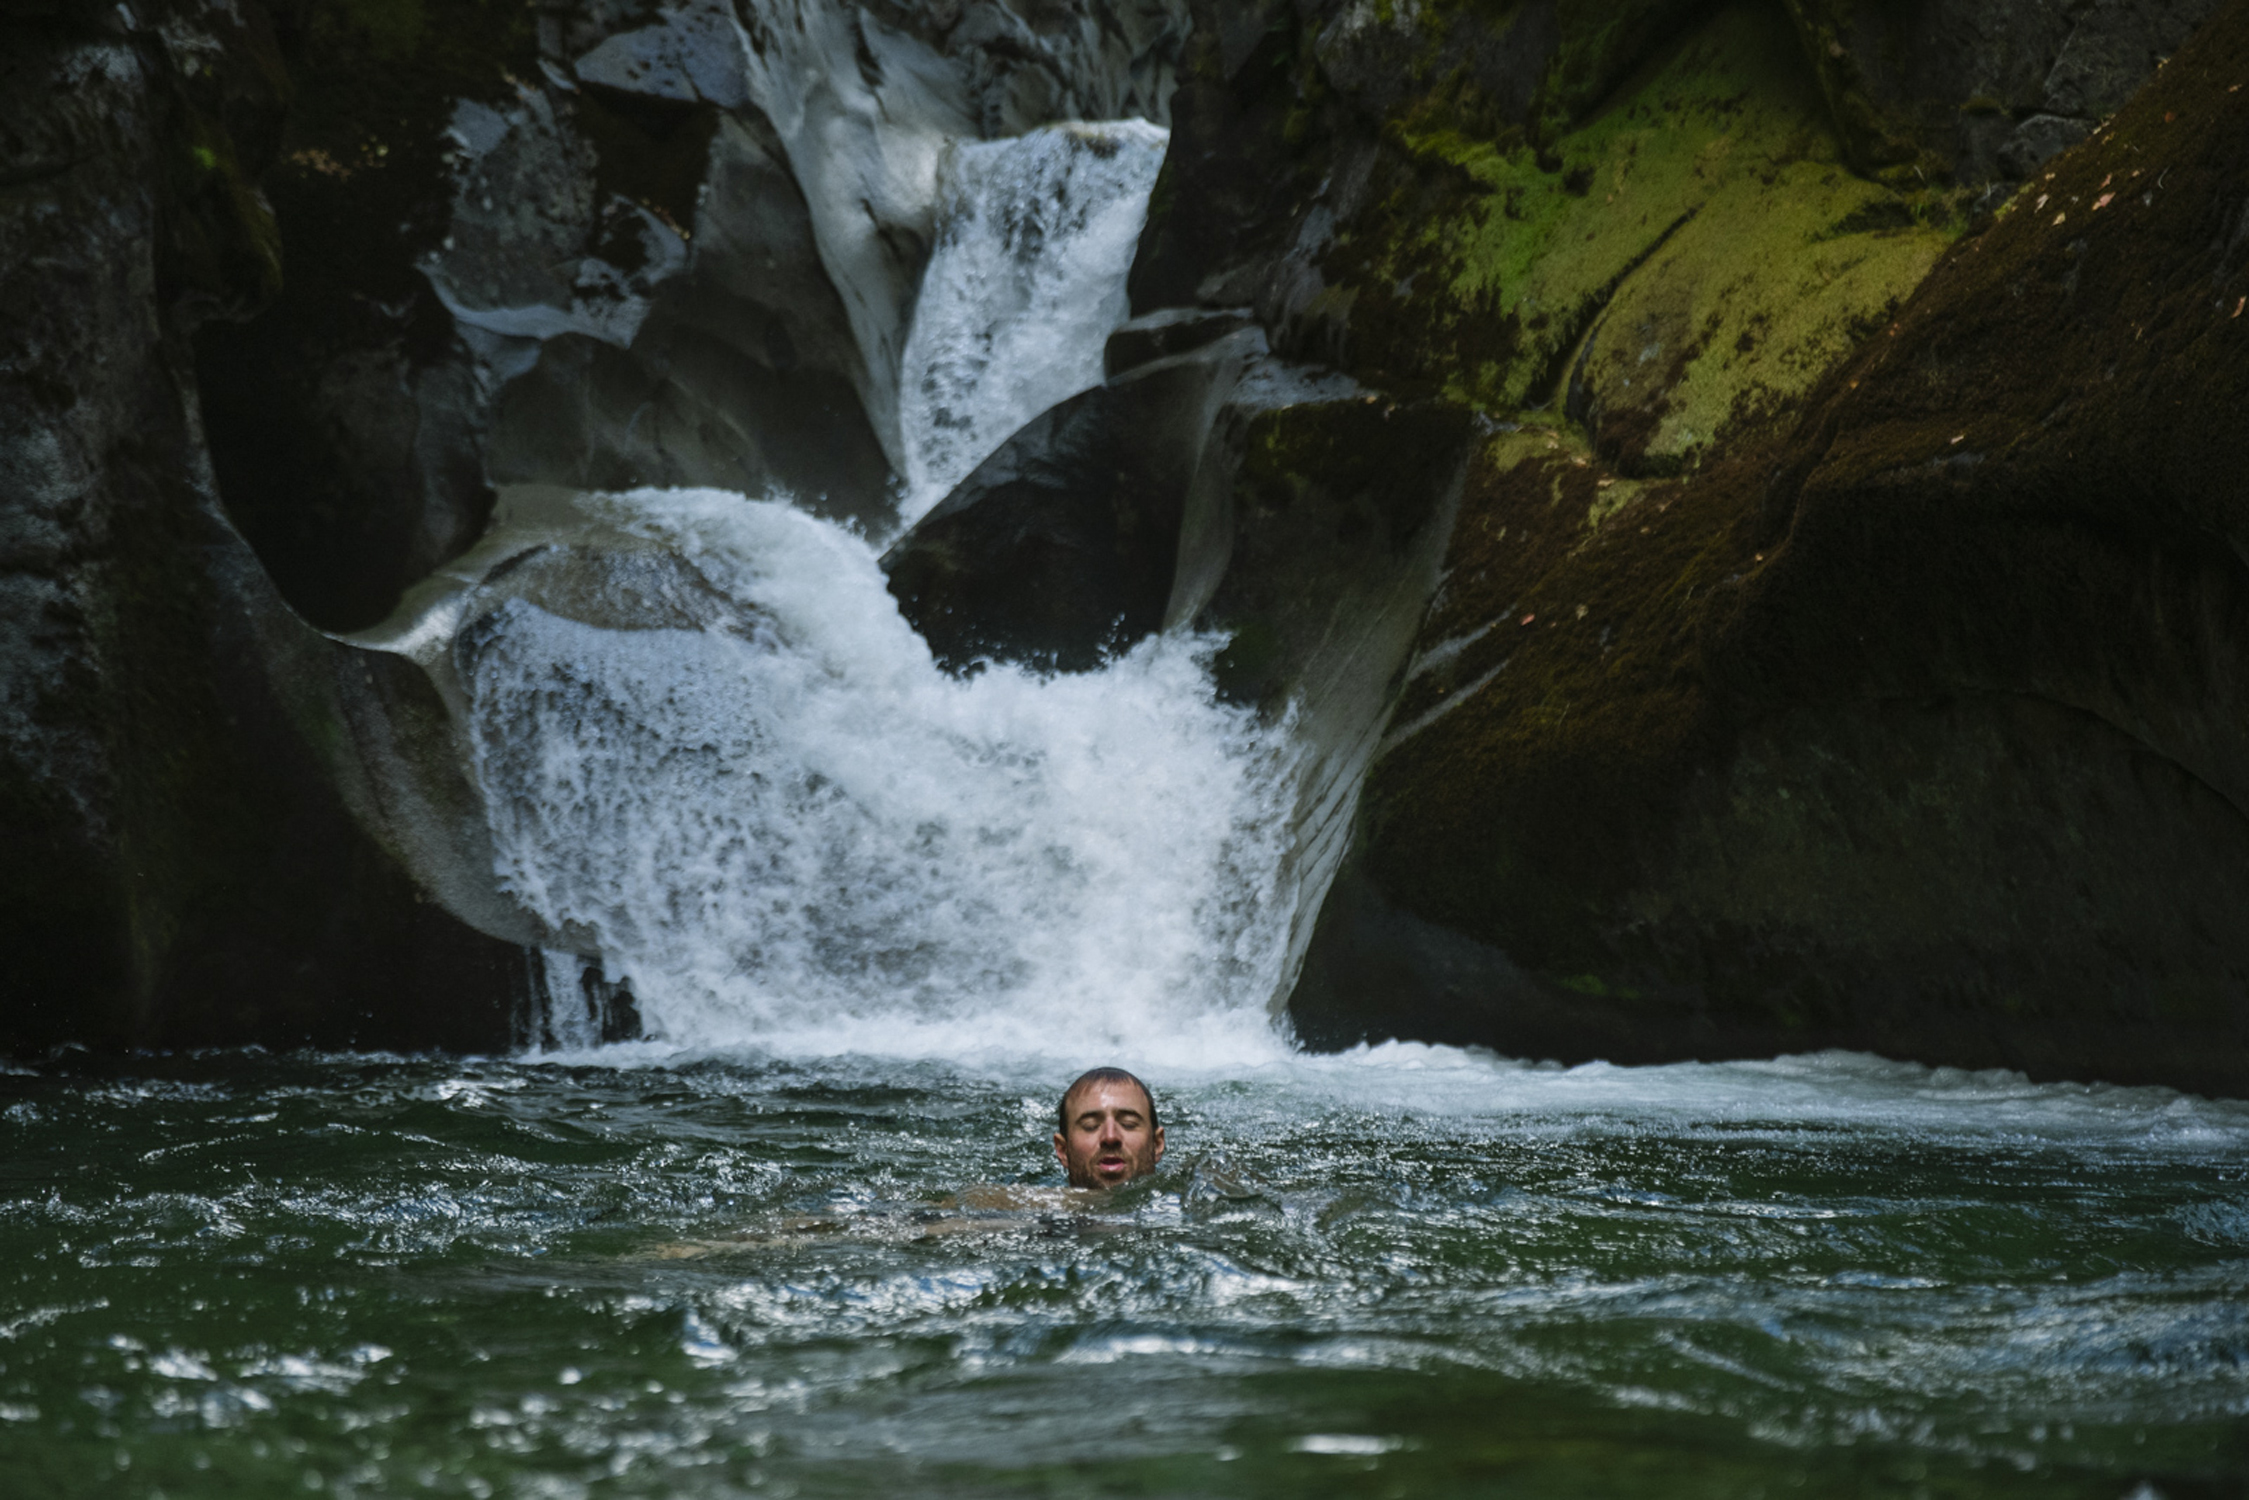 Kurt Sorge sumergiéndose en el río para refrescarse